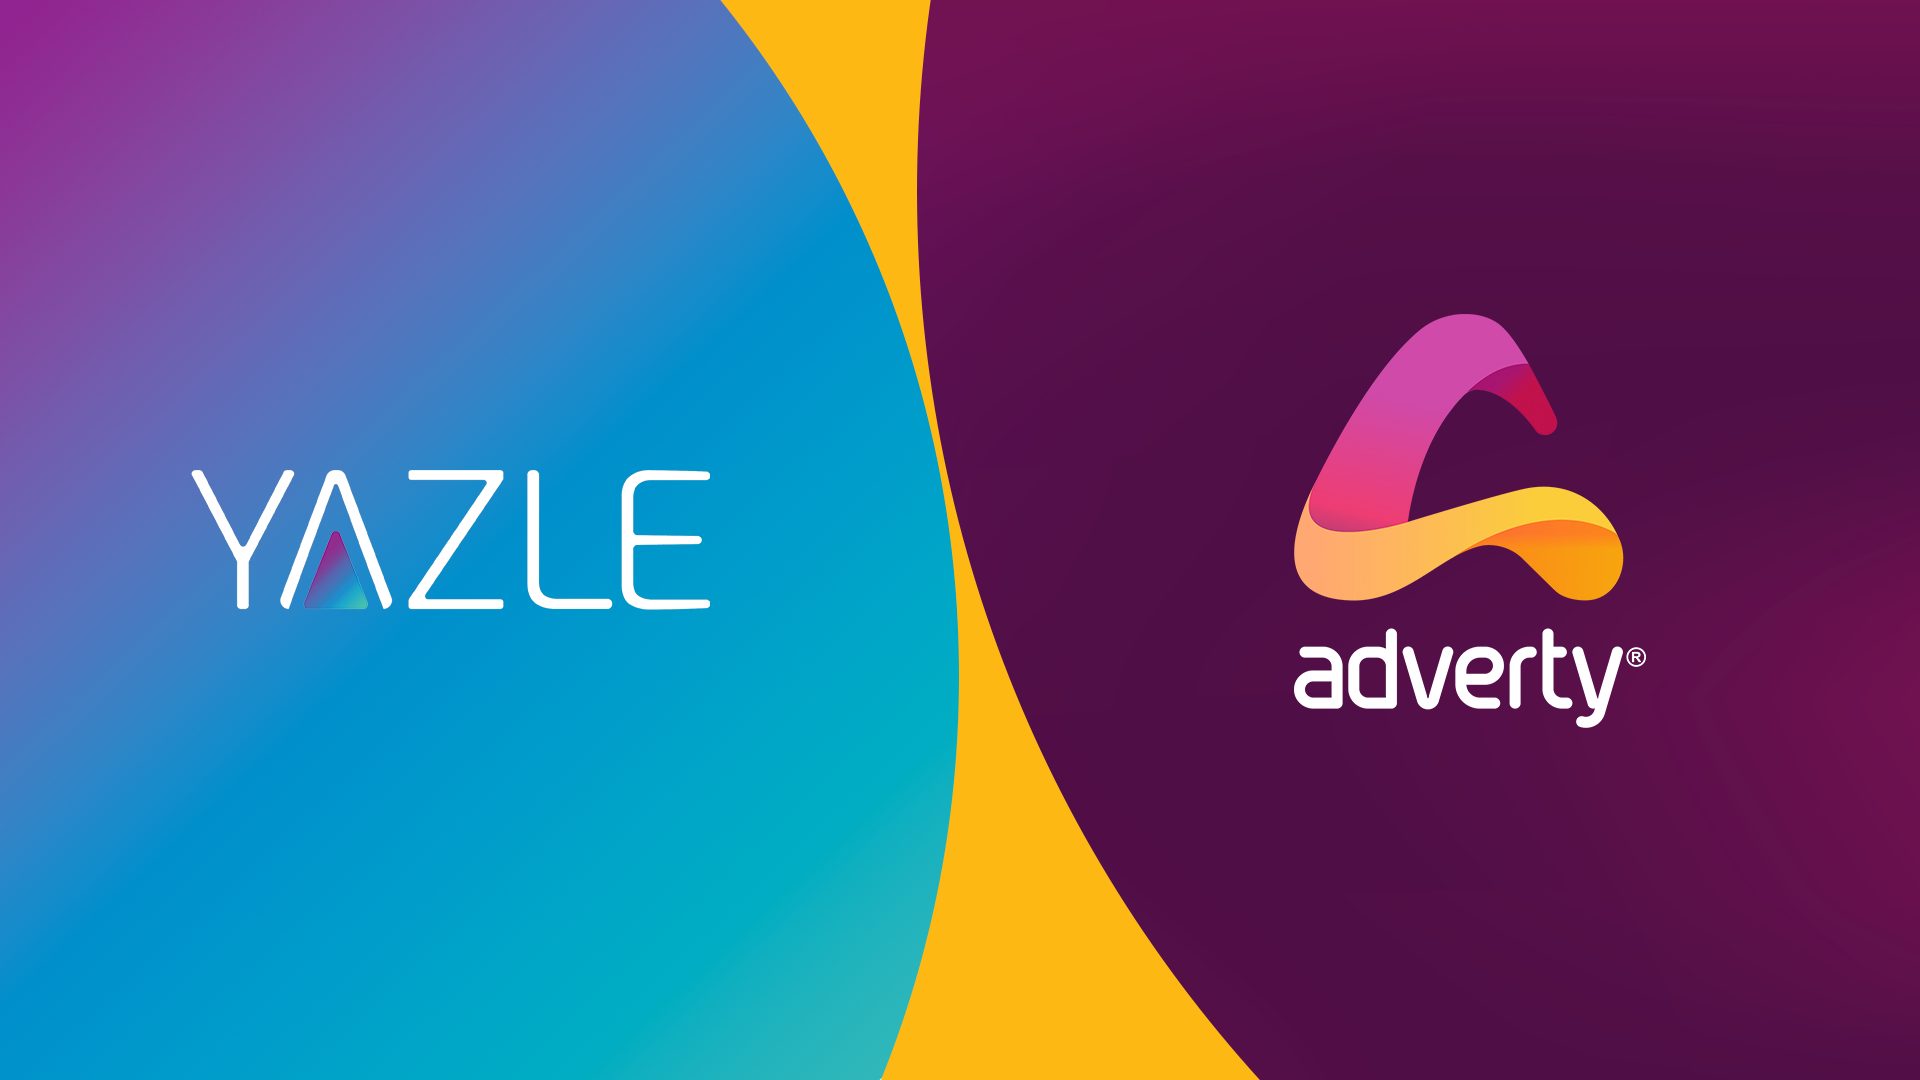 Adverty y Yazle anuncian una asociación publicitaria exclusiva en el juego en la región MENA